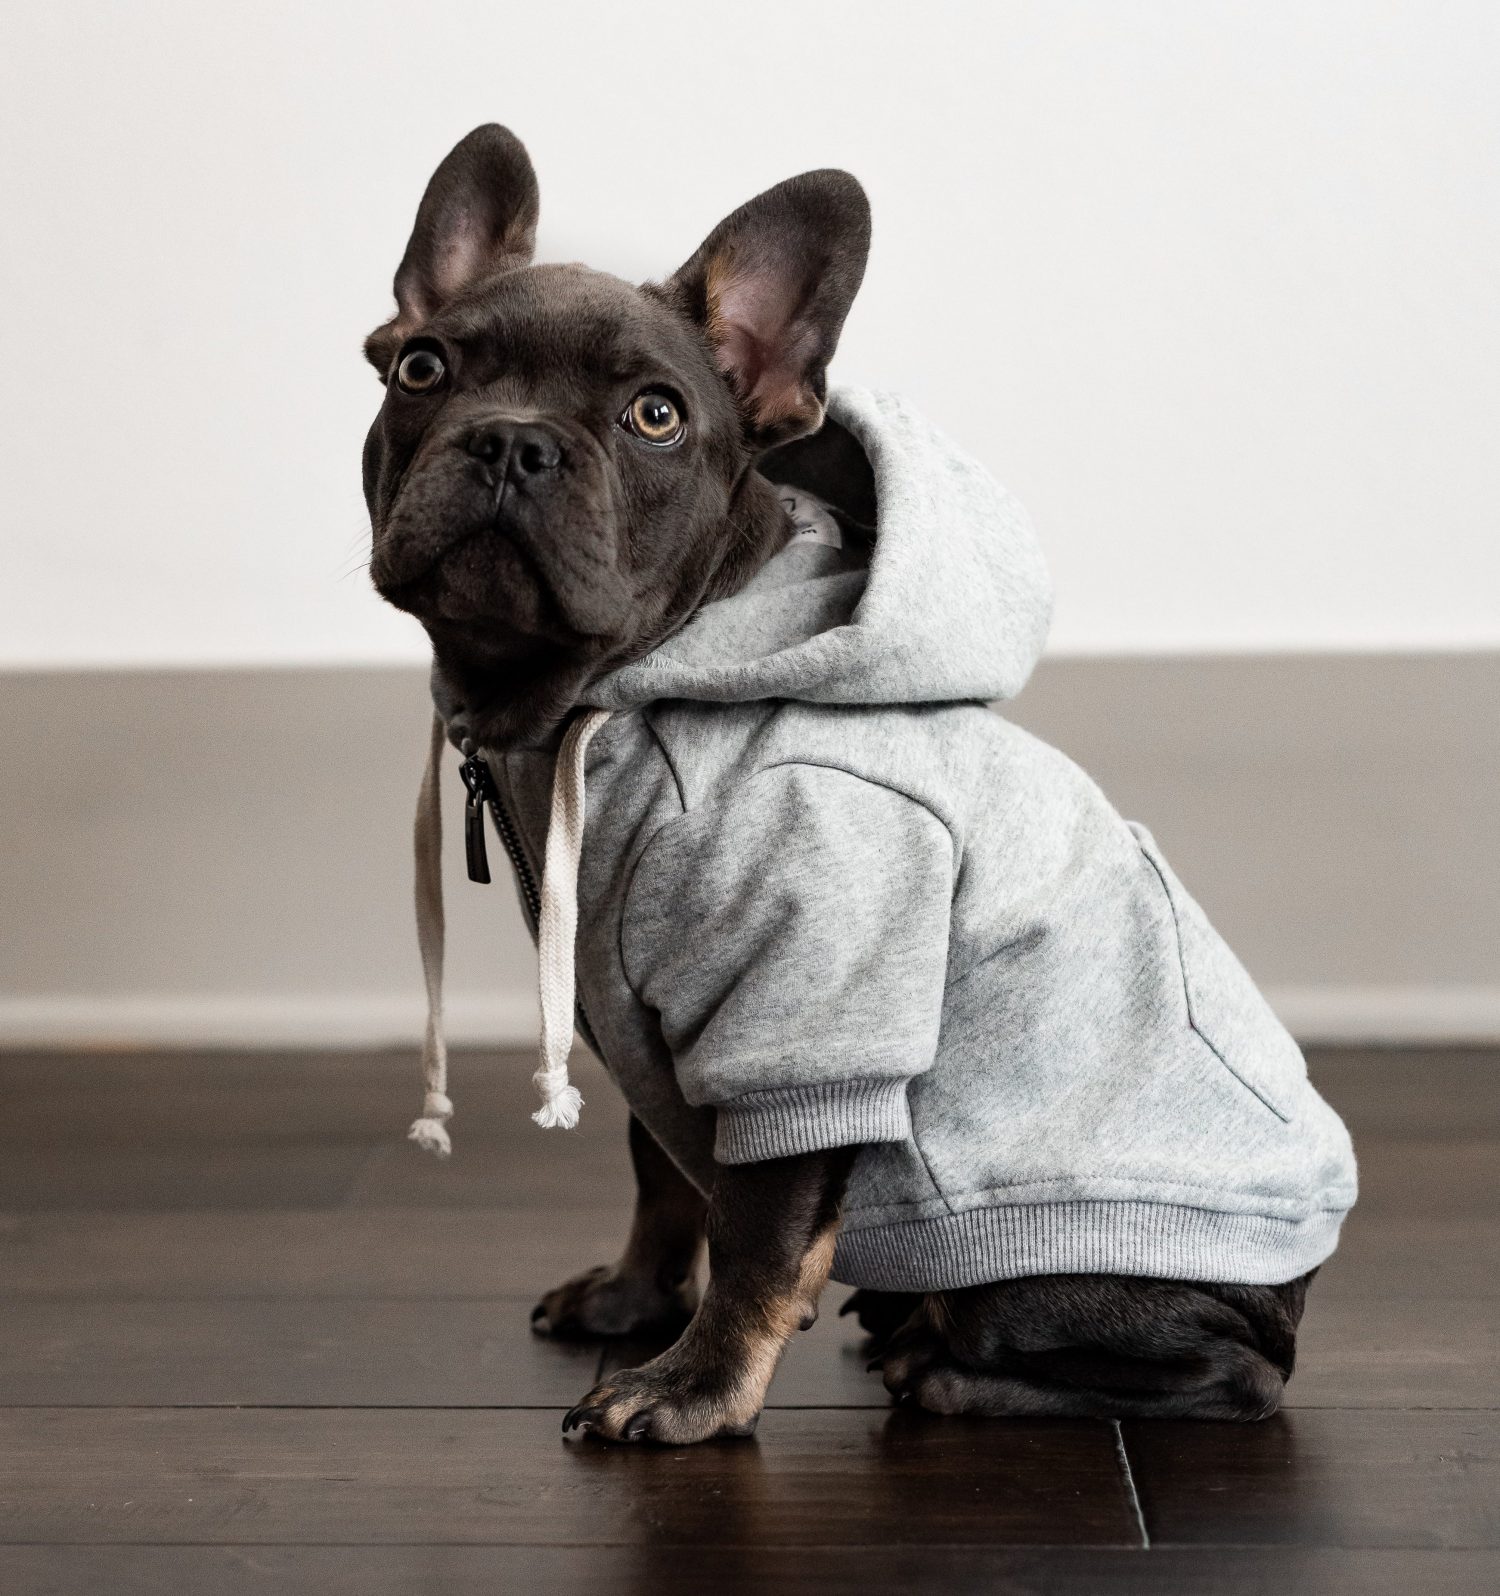 grey dog hoodie